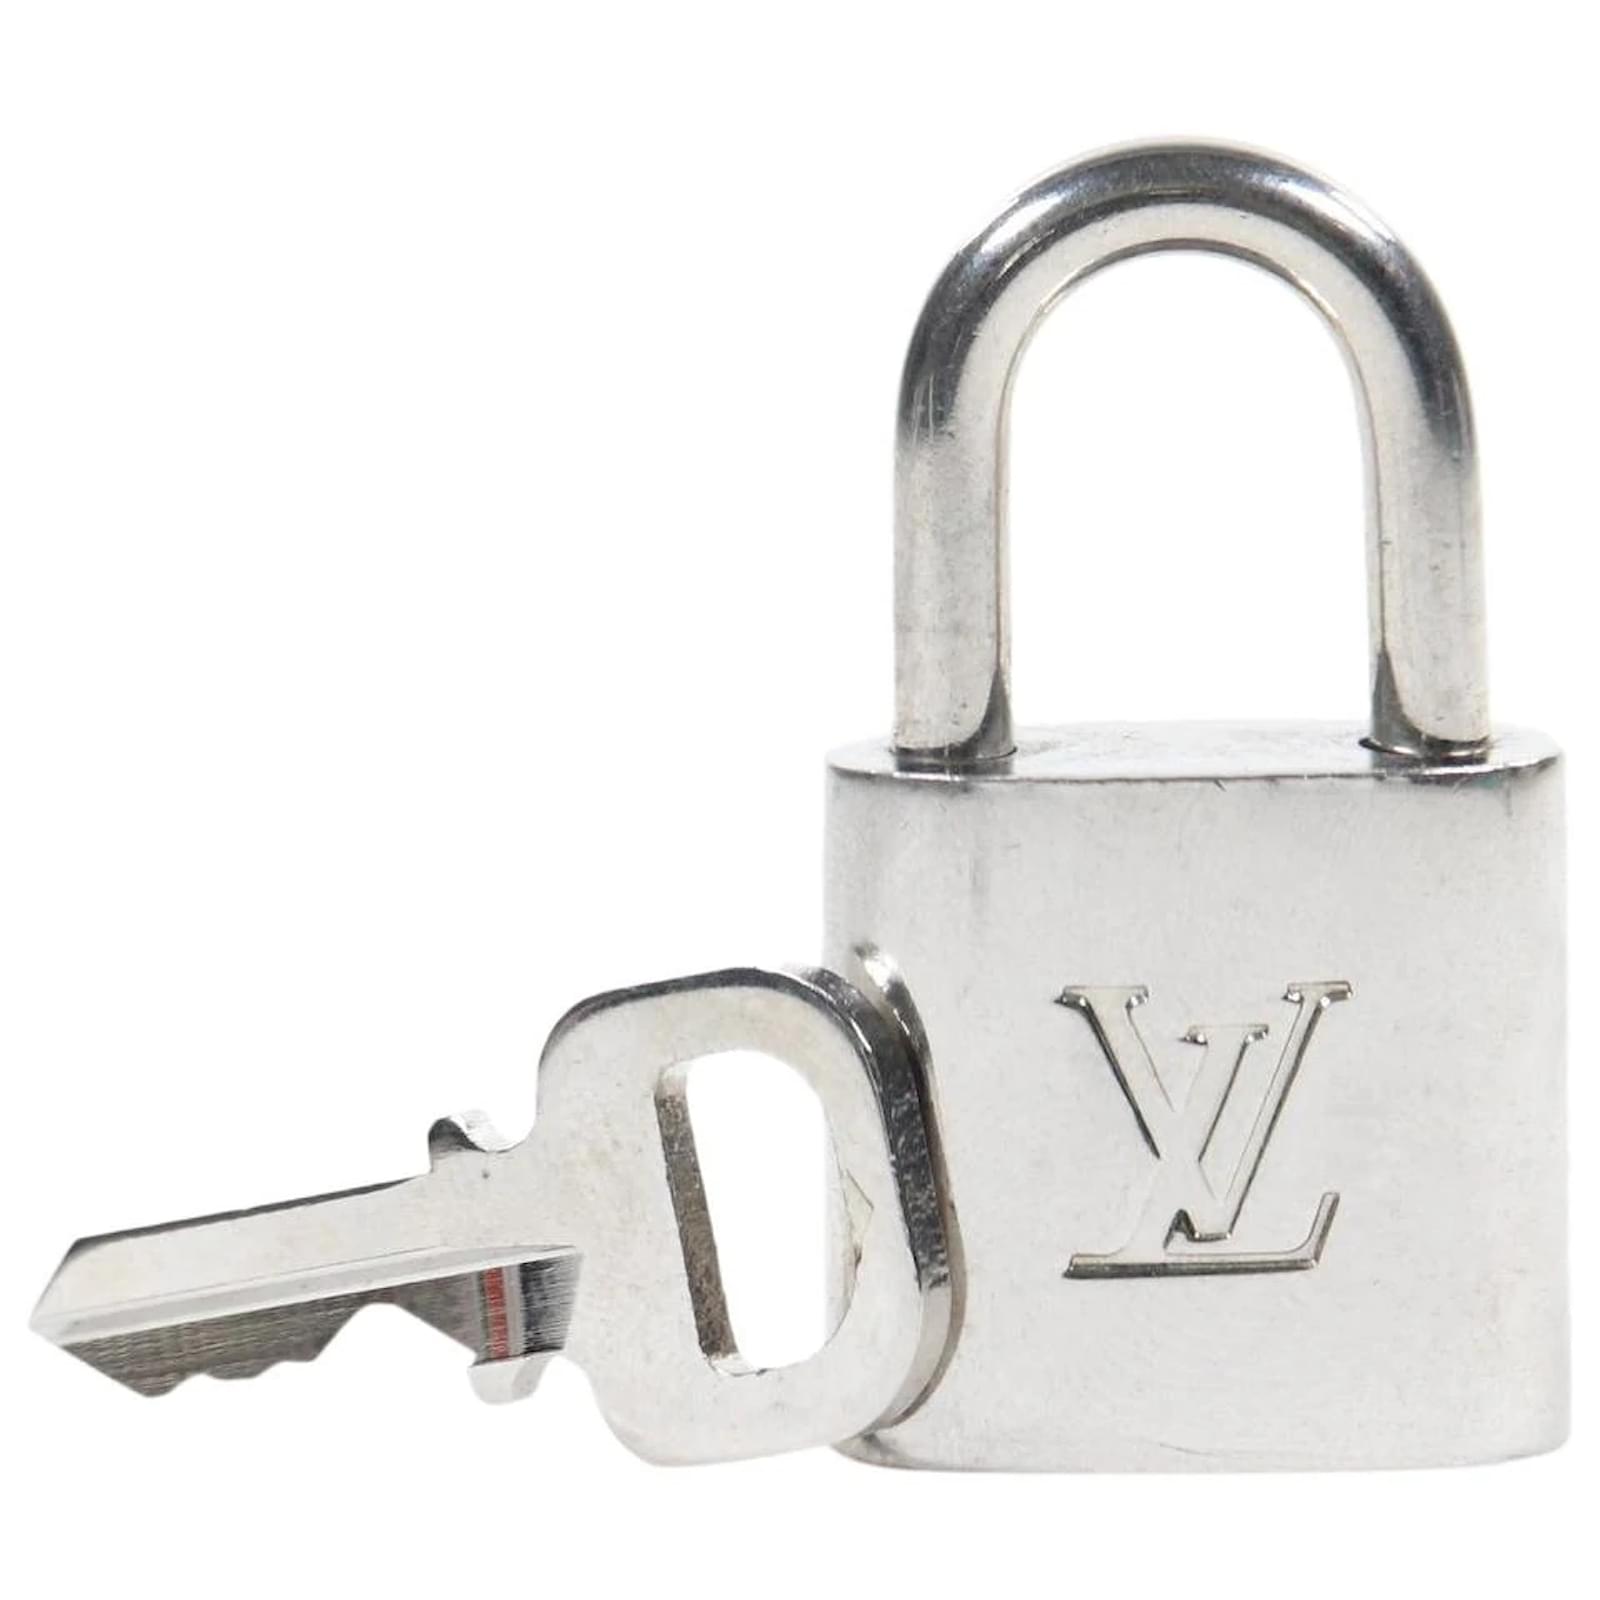 Louis Vuitton Silver Padlock & Key